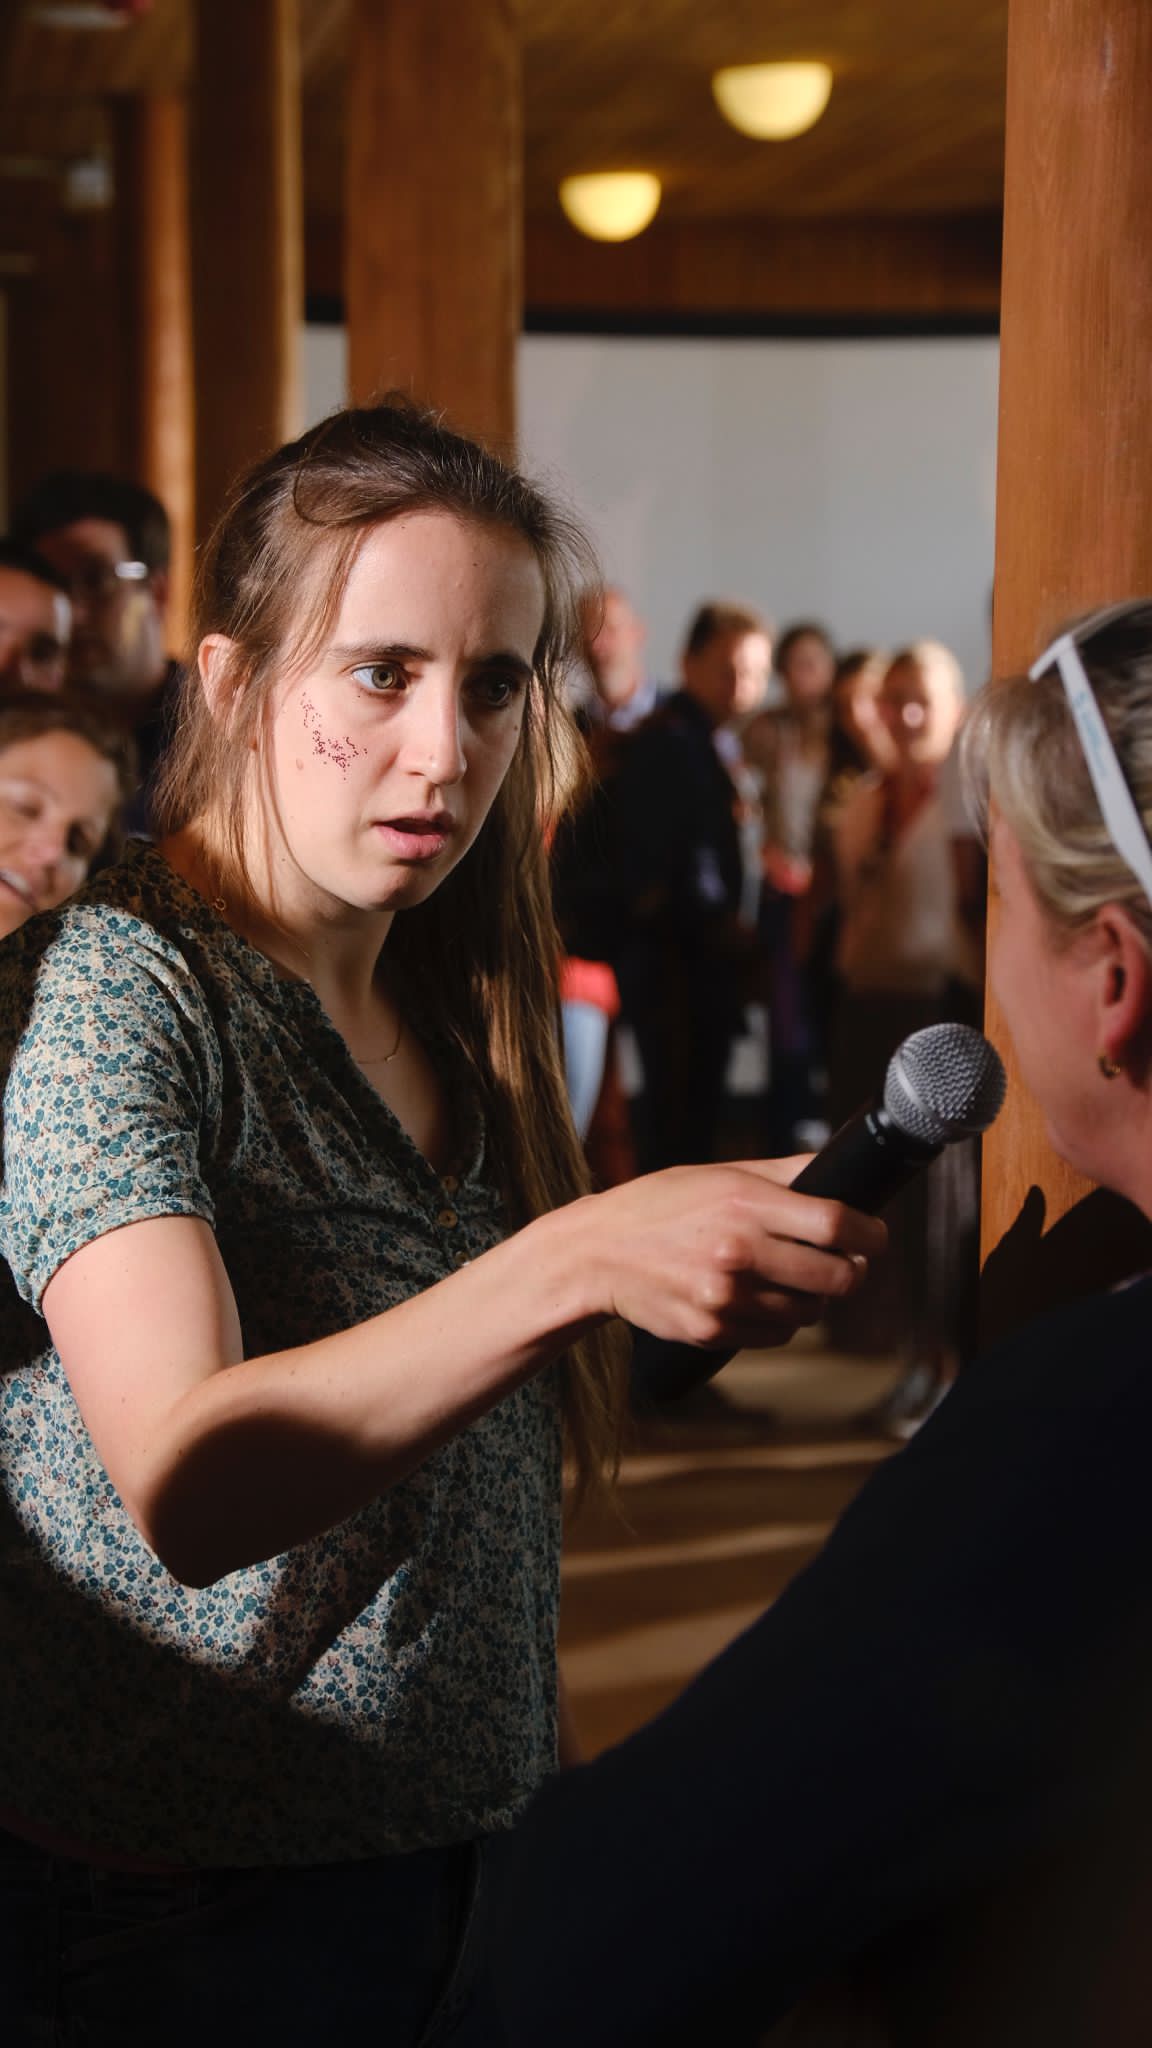 Vrouw met microfoon stelt vragen in het publiek